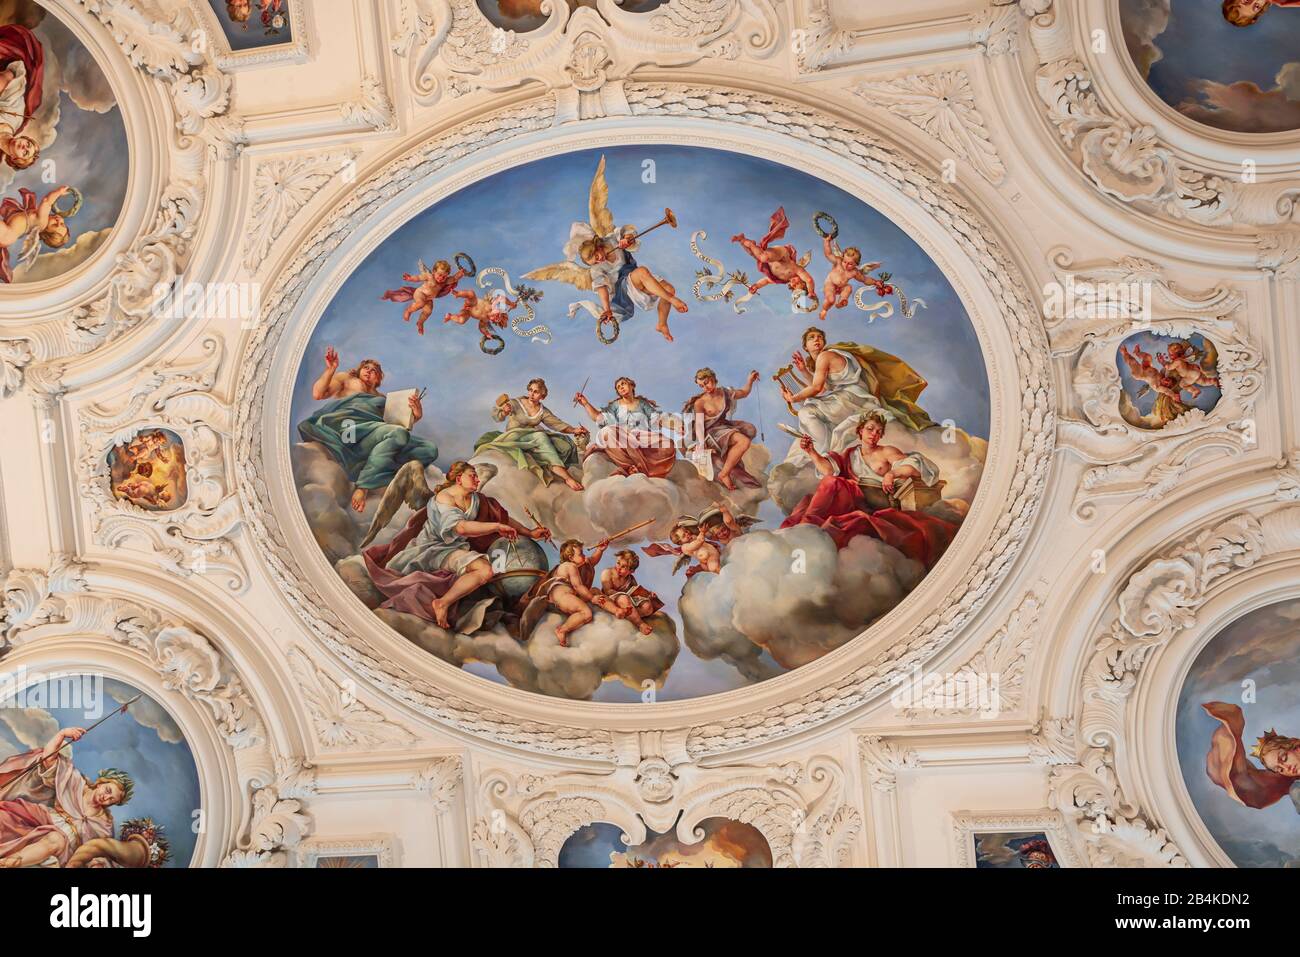 Allemagne, Saxe-Anhalt, Hundisburg, peinture de plafond dans le château Hundisburg, panneaux de plafond ont des modèles dans le 1593 publié Iconologia de Cesare Ripa. Banque D'Images